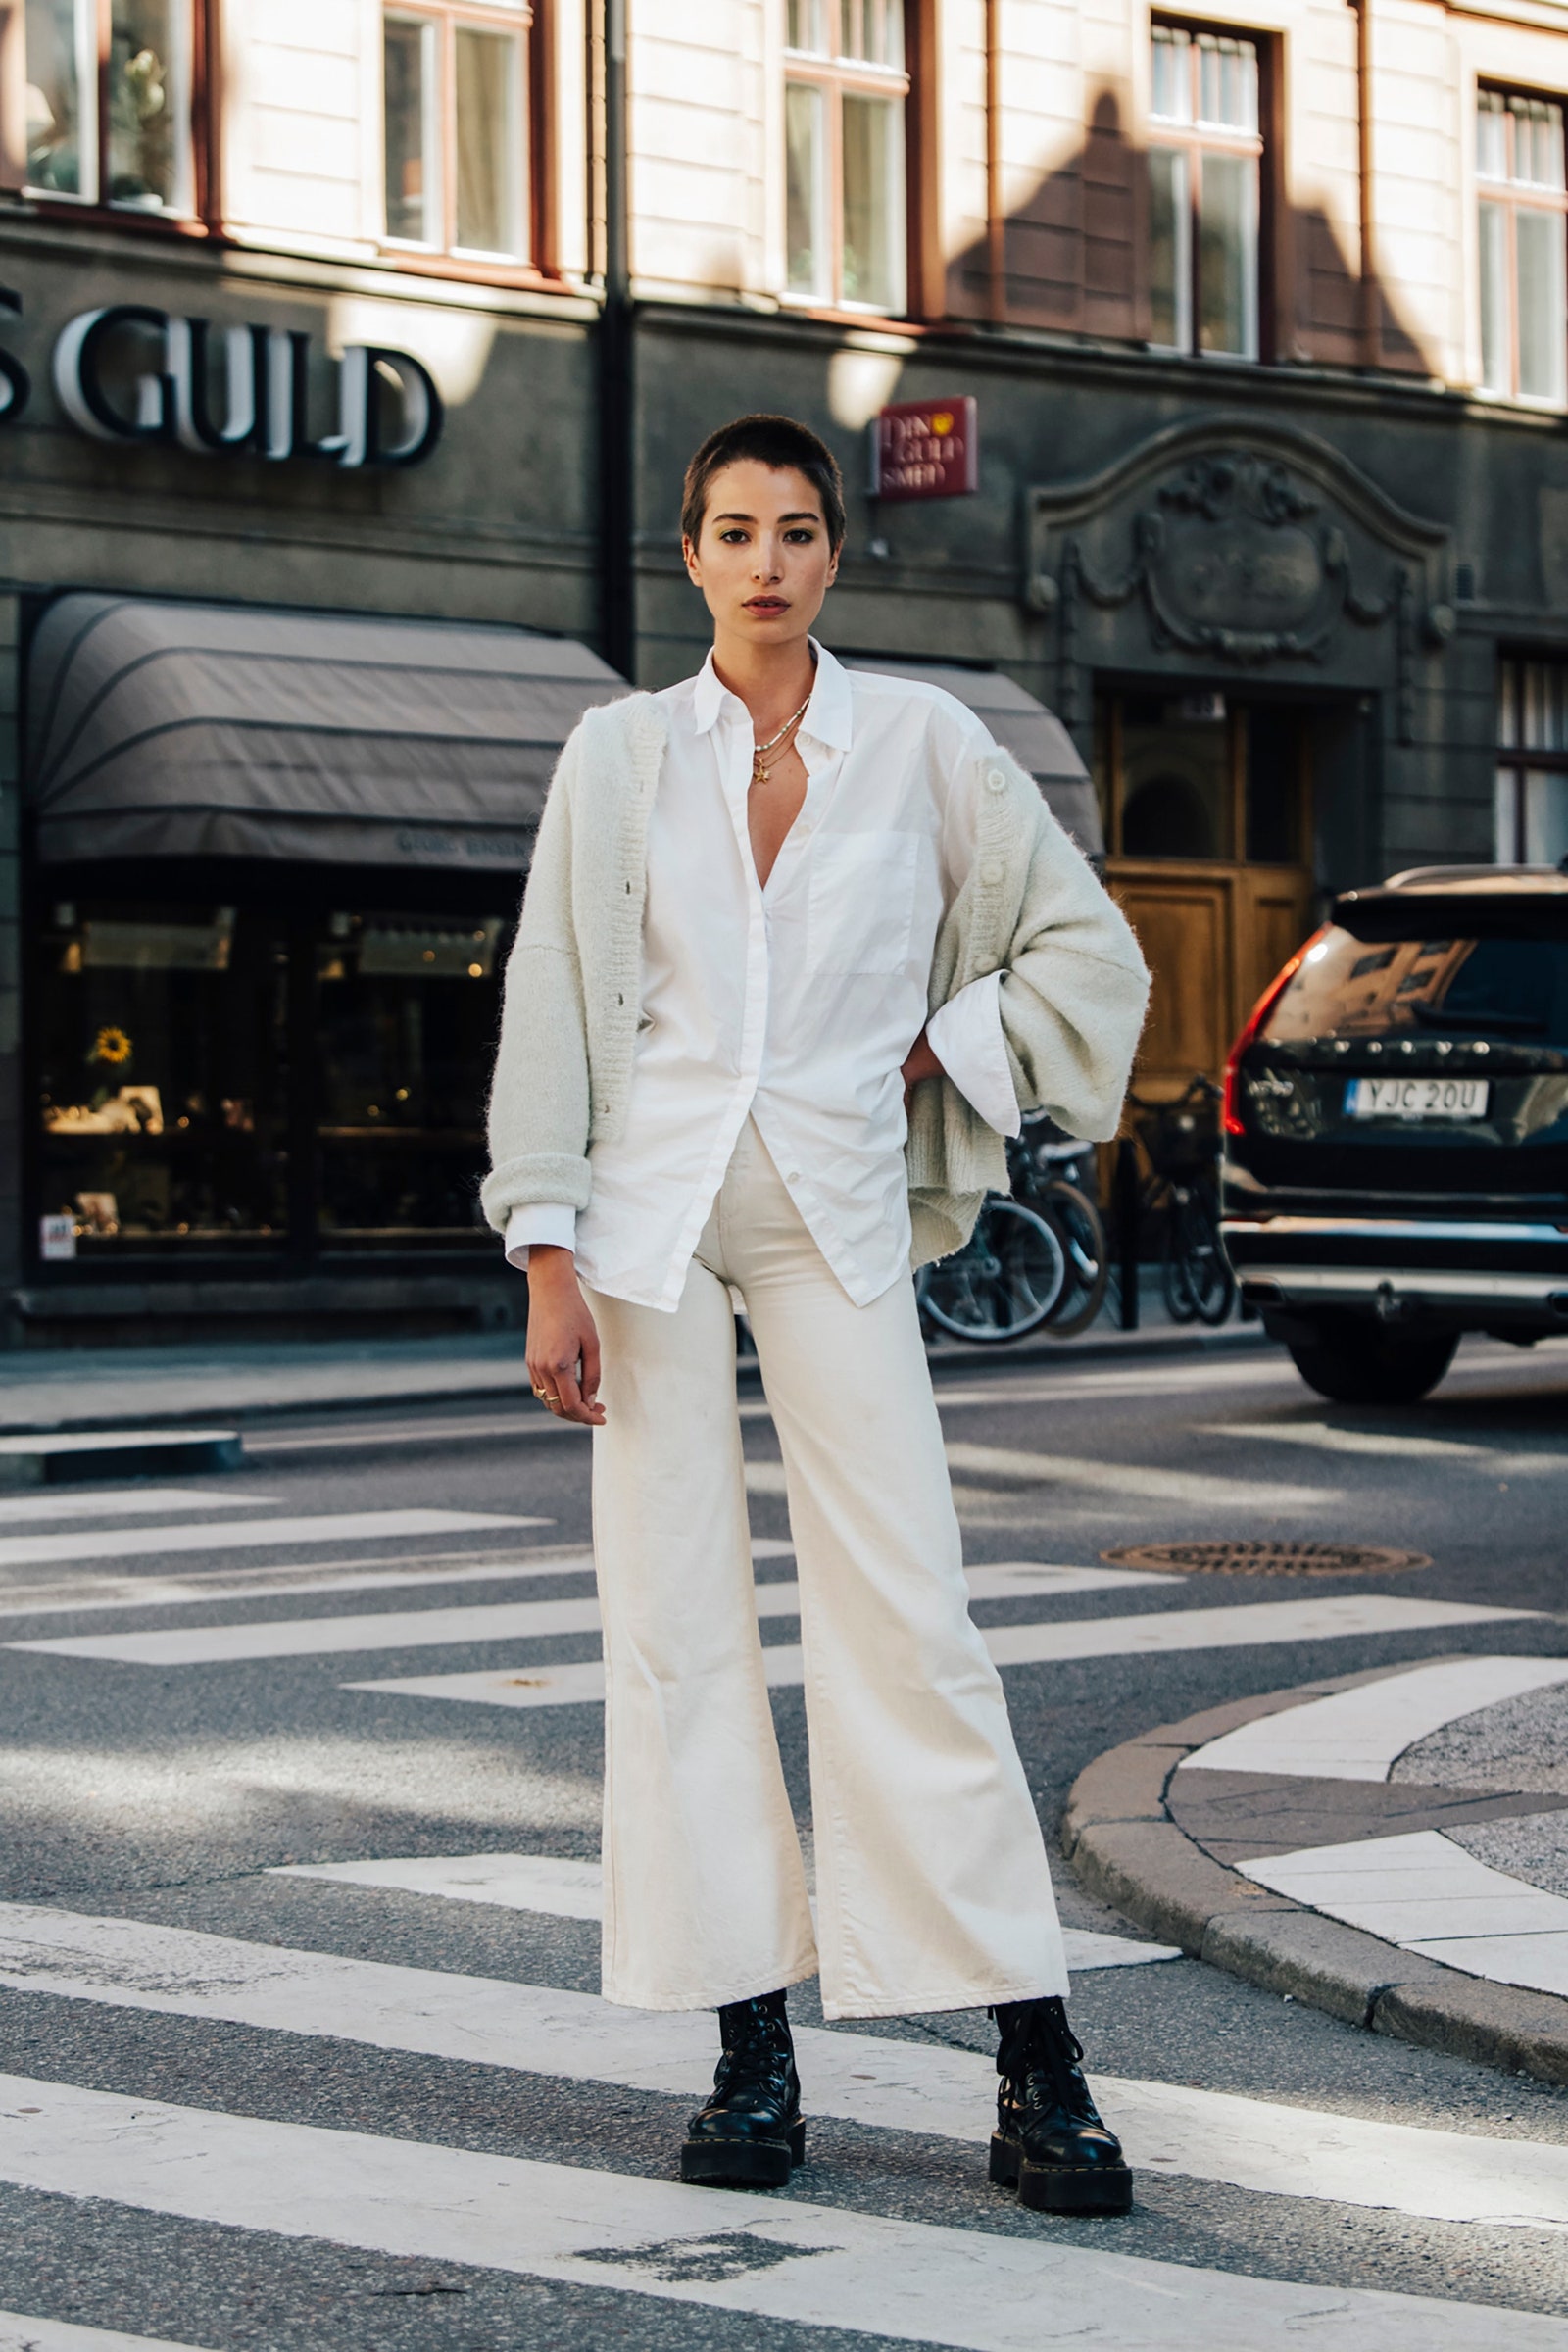 Achetez 7 tenues en noir et blanc inspirées du style urbain de Stockholm